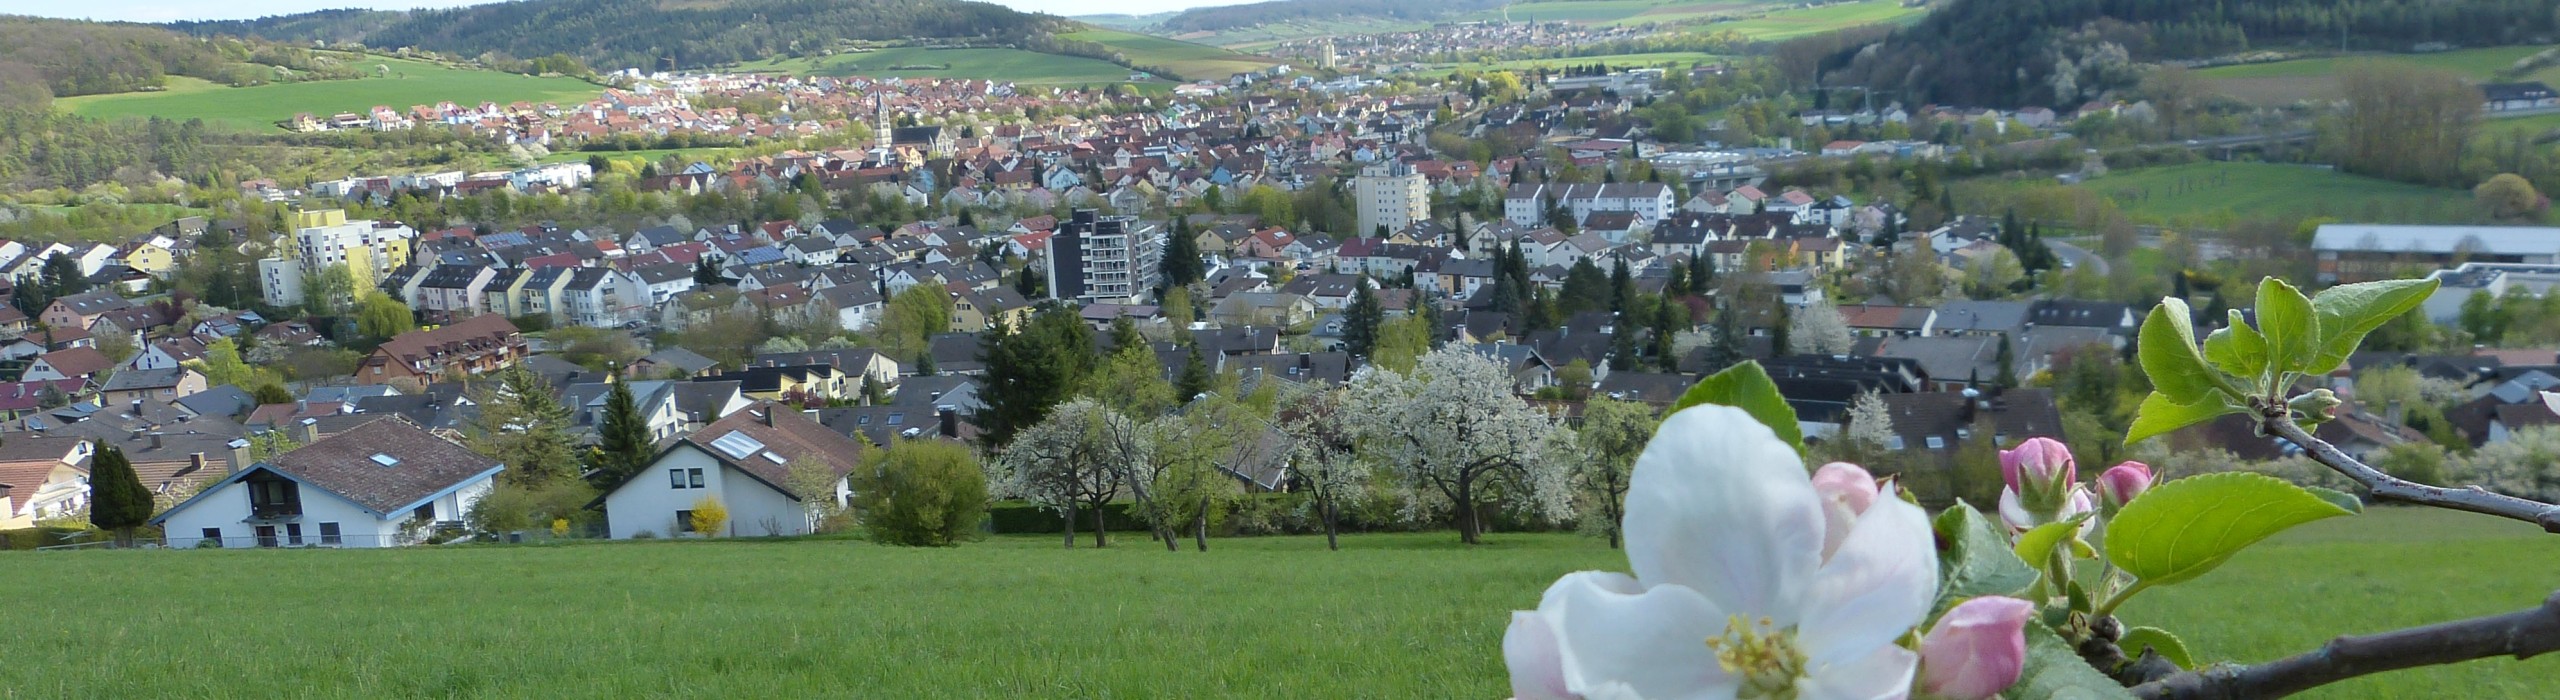 Landschaftsaufnahme Igersheim im Hintergrund, Apfelblüte im Vordergrund